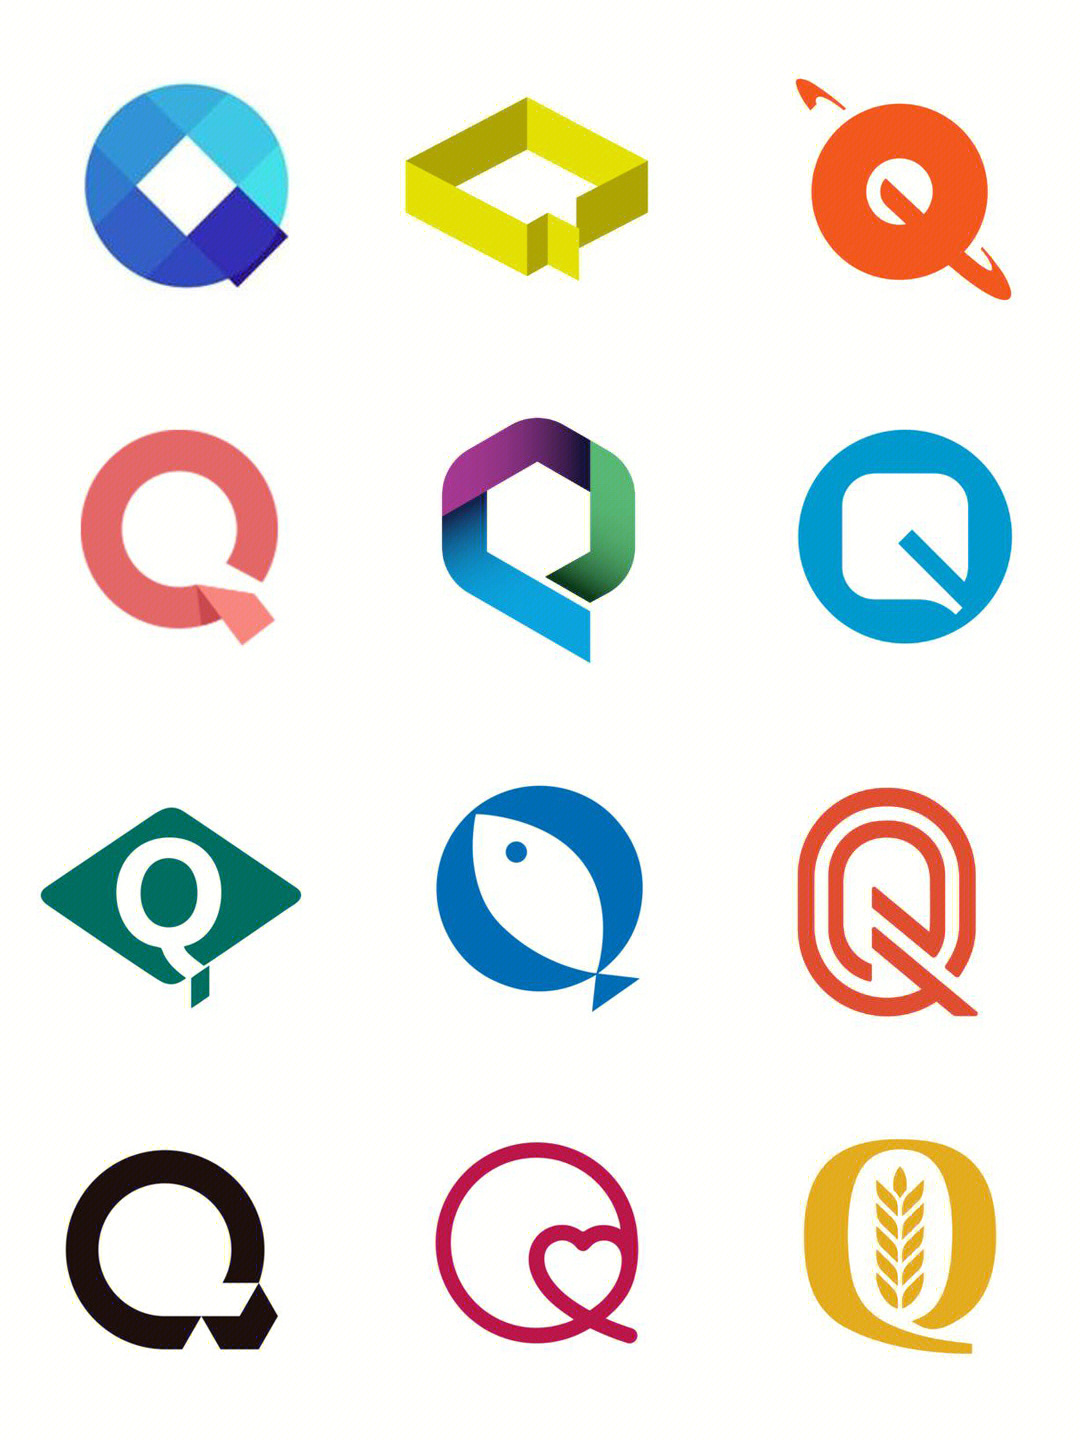 英文q logo设计/极简logo设计/标志设计/字母商标设计 英文 logo